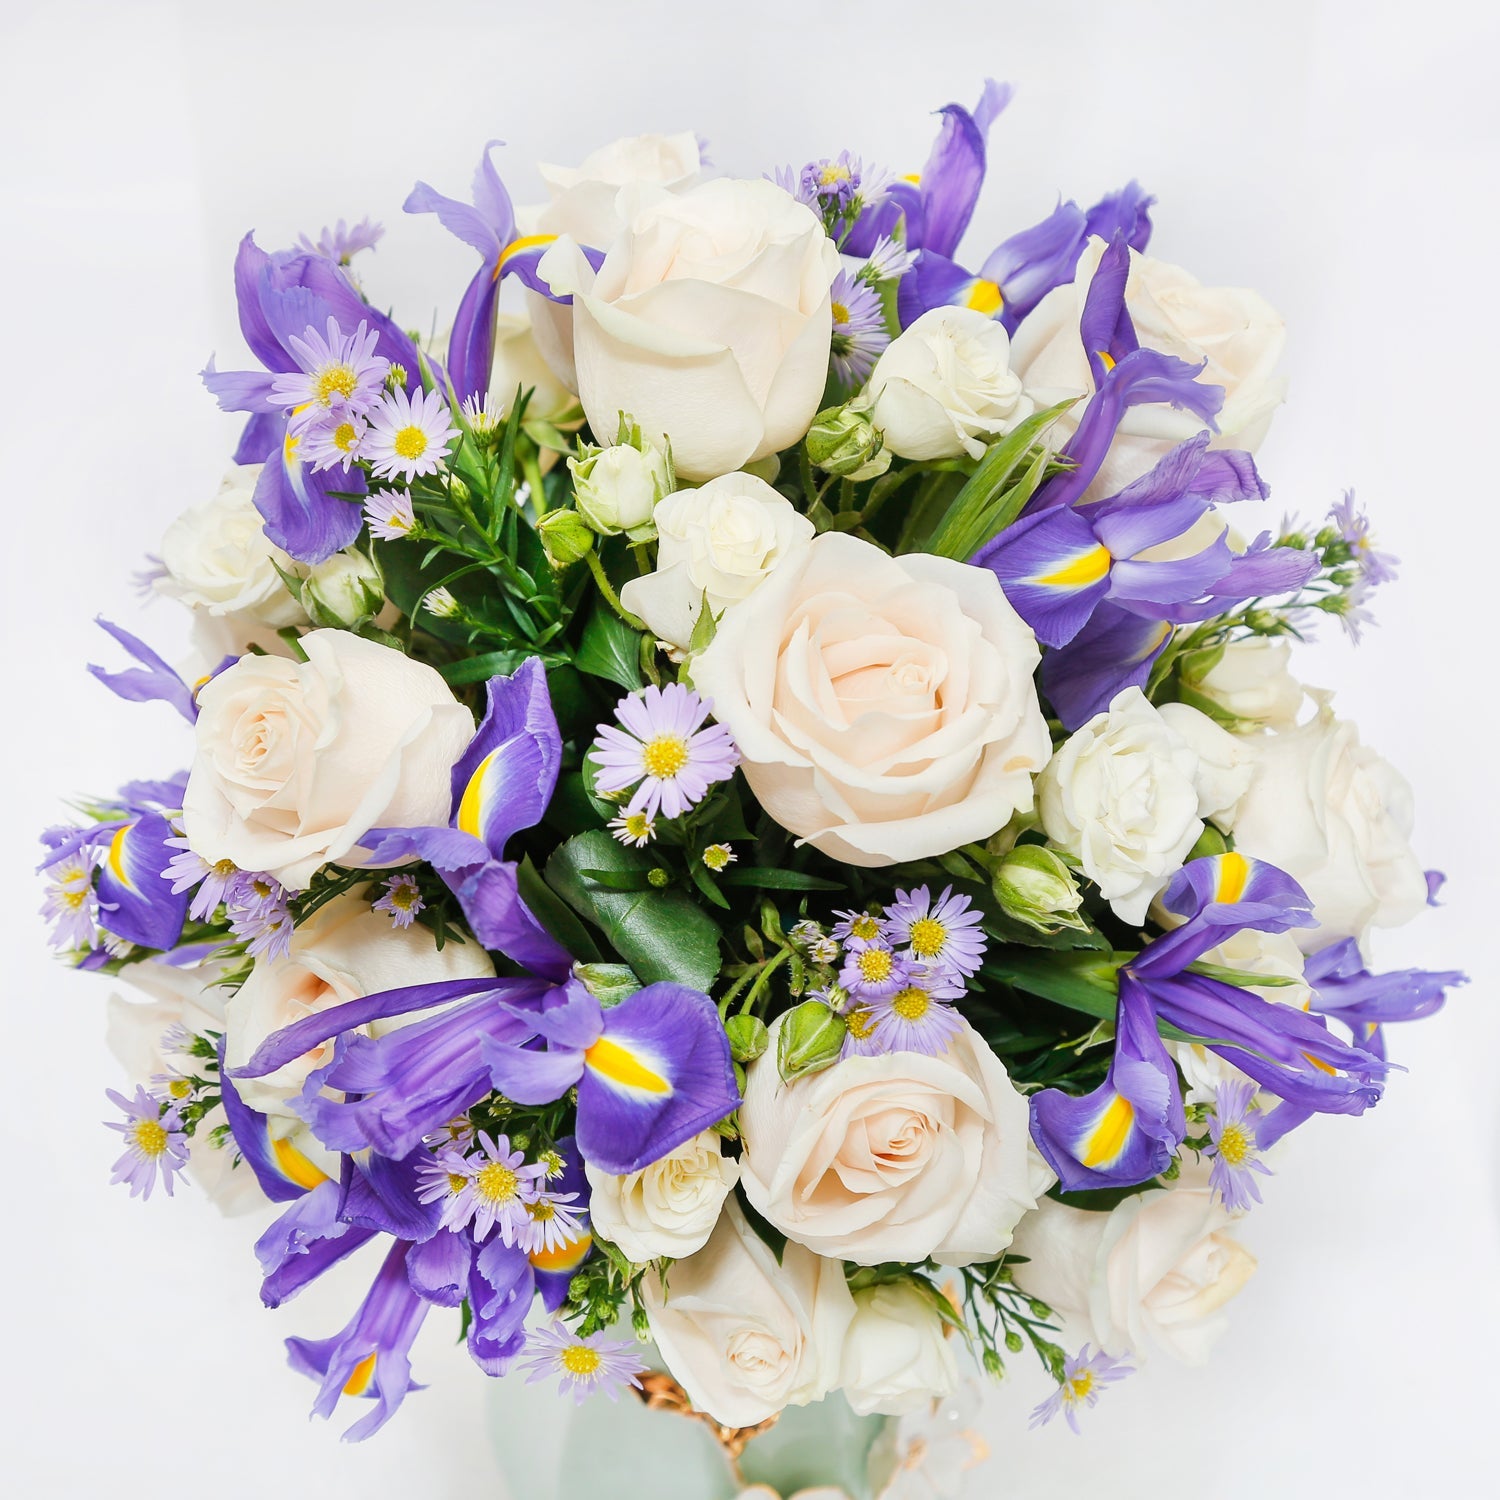 White & Blue Flowers for Umrah